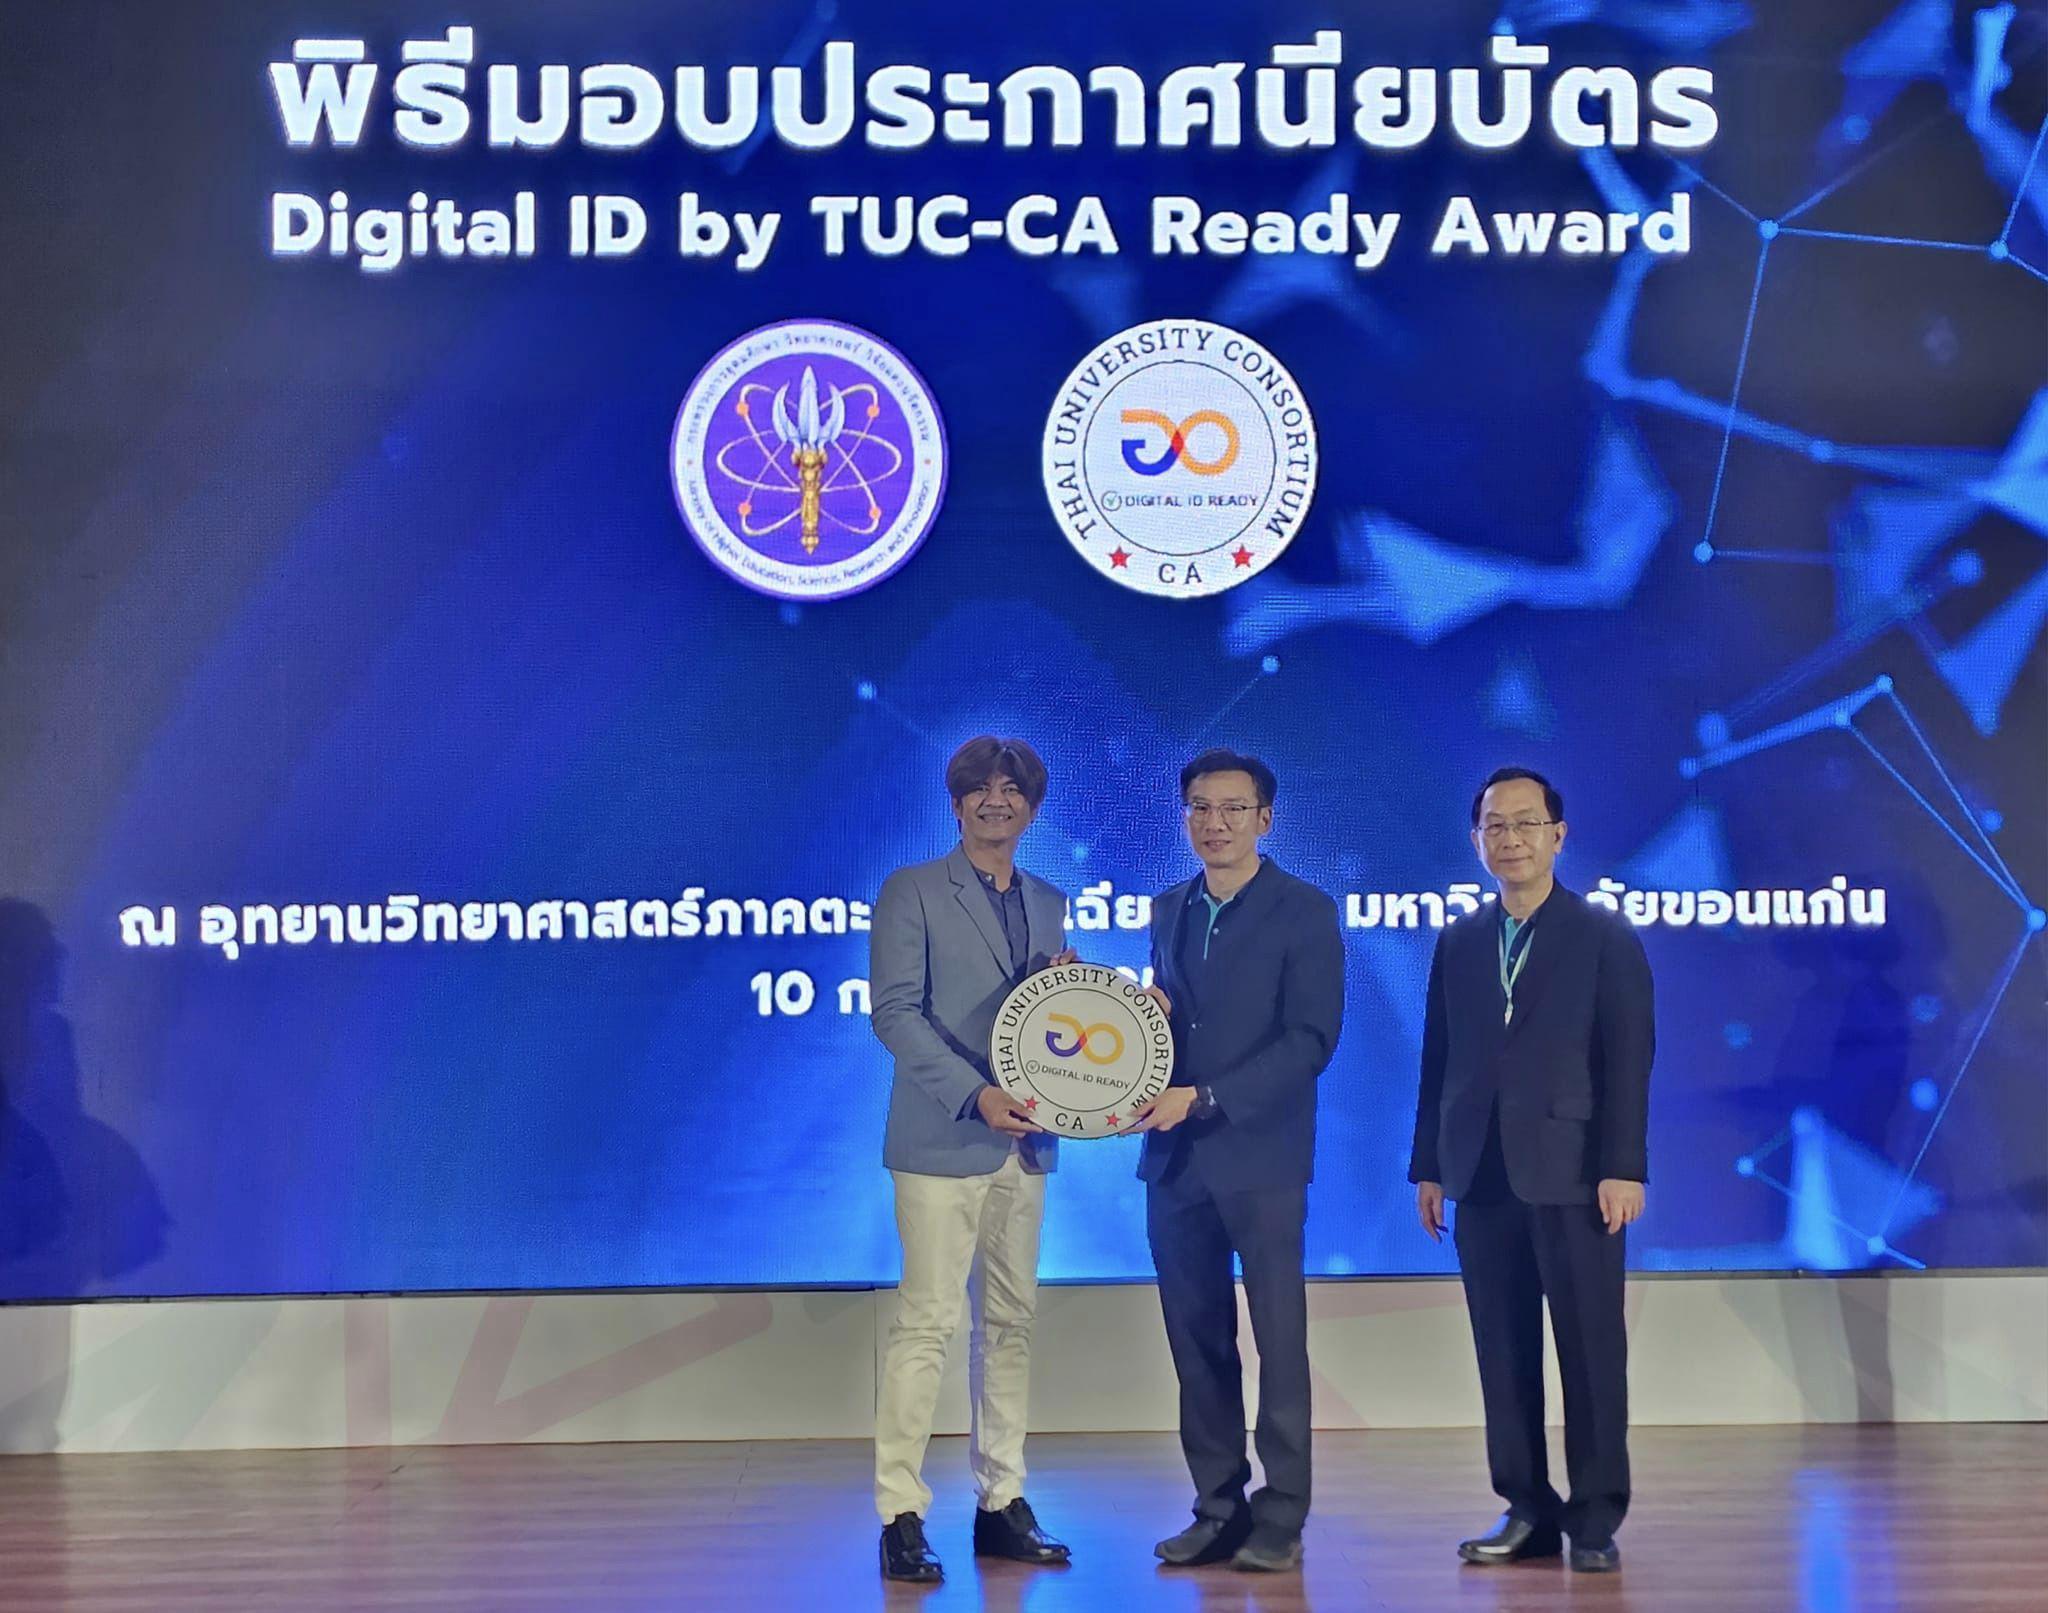 4. พิธีมอบประกาศนียบัตร Digital ID by TUC-CA Ready Award